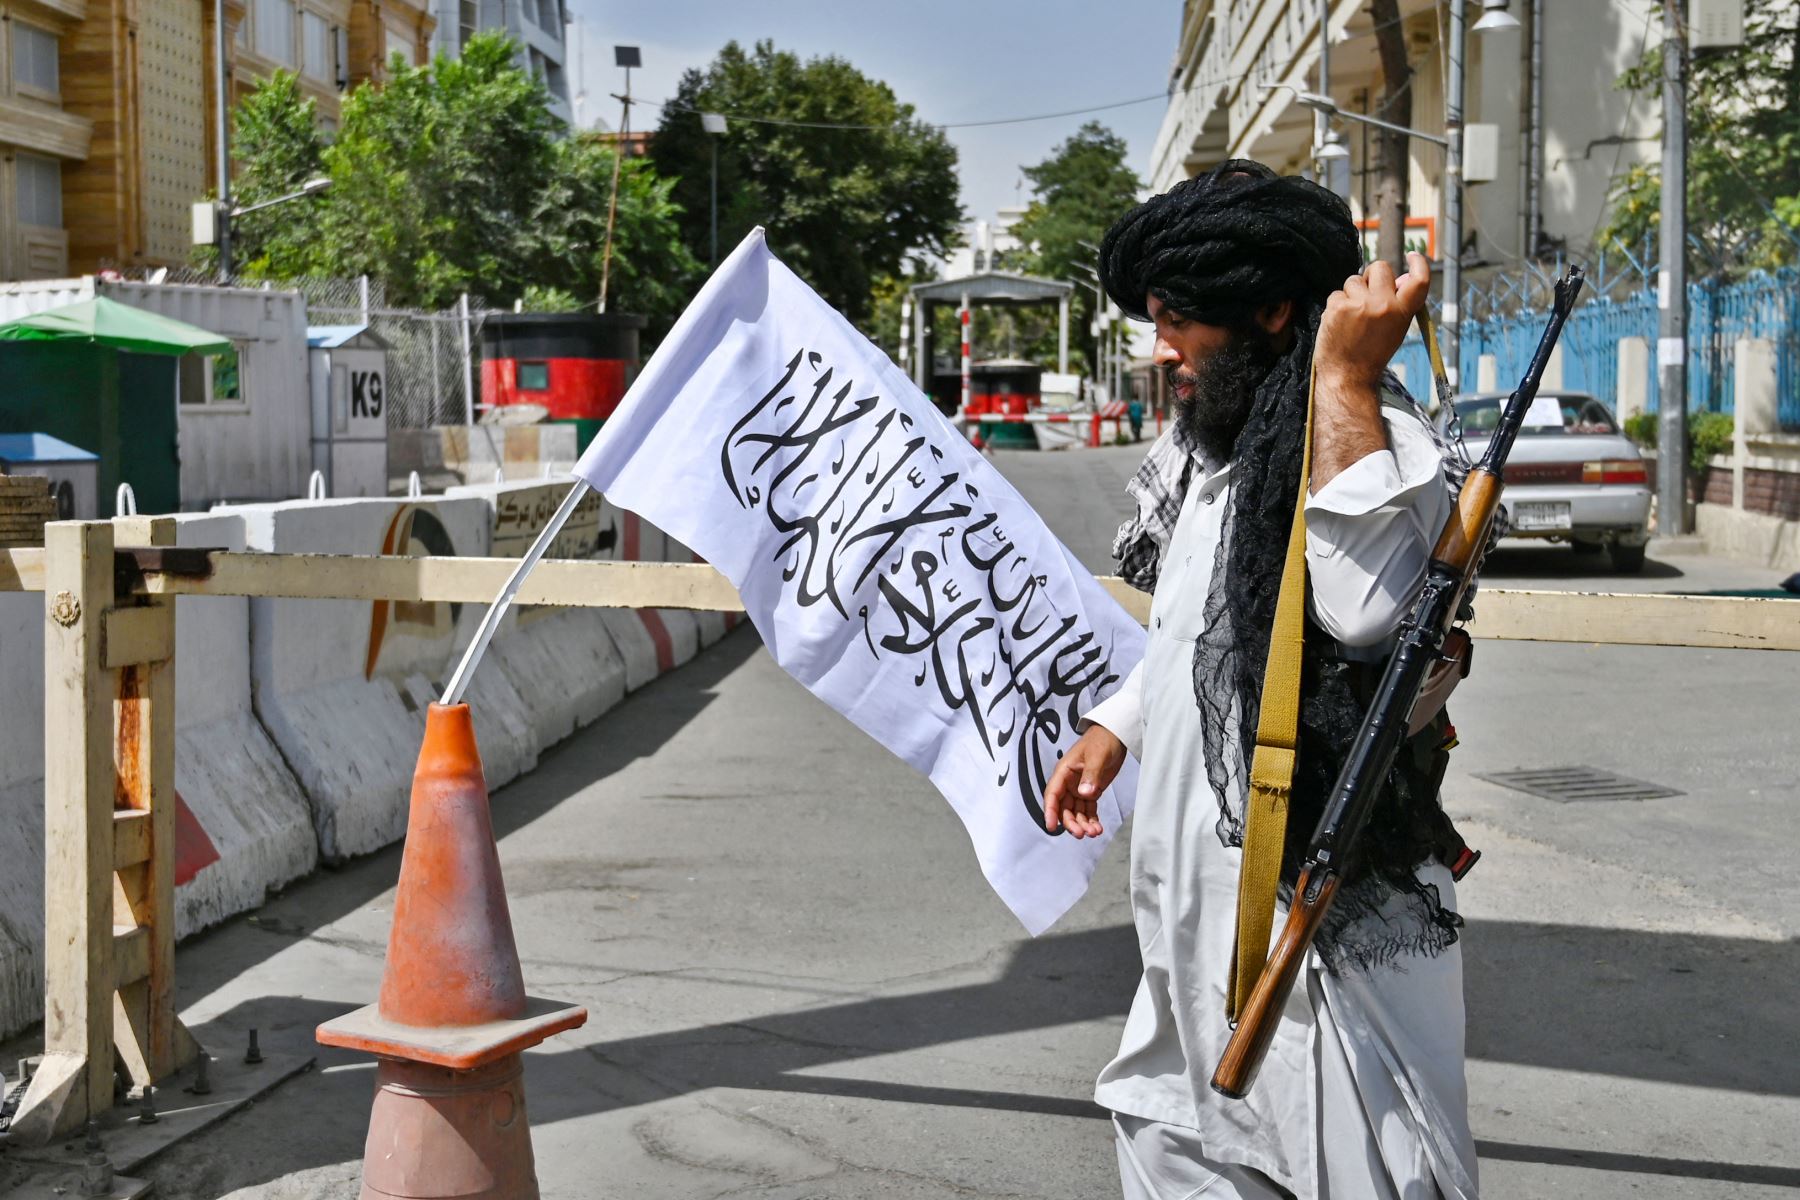 Un combatiente talibán patrulla a lo largo de una calle en Kabul, mientras los talibanes se movían rápidamente para reiniciar la capital afgana luego de su impresionante toma de control de Kabul y le dijeron al personal del gobierno que regresara al trabajo.

Foto: AFP